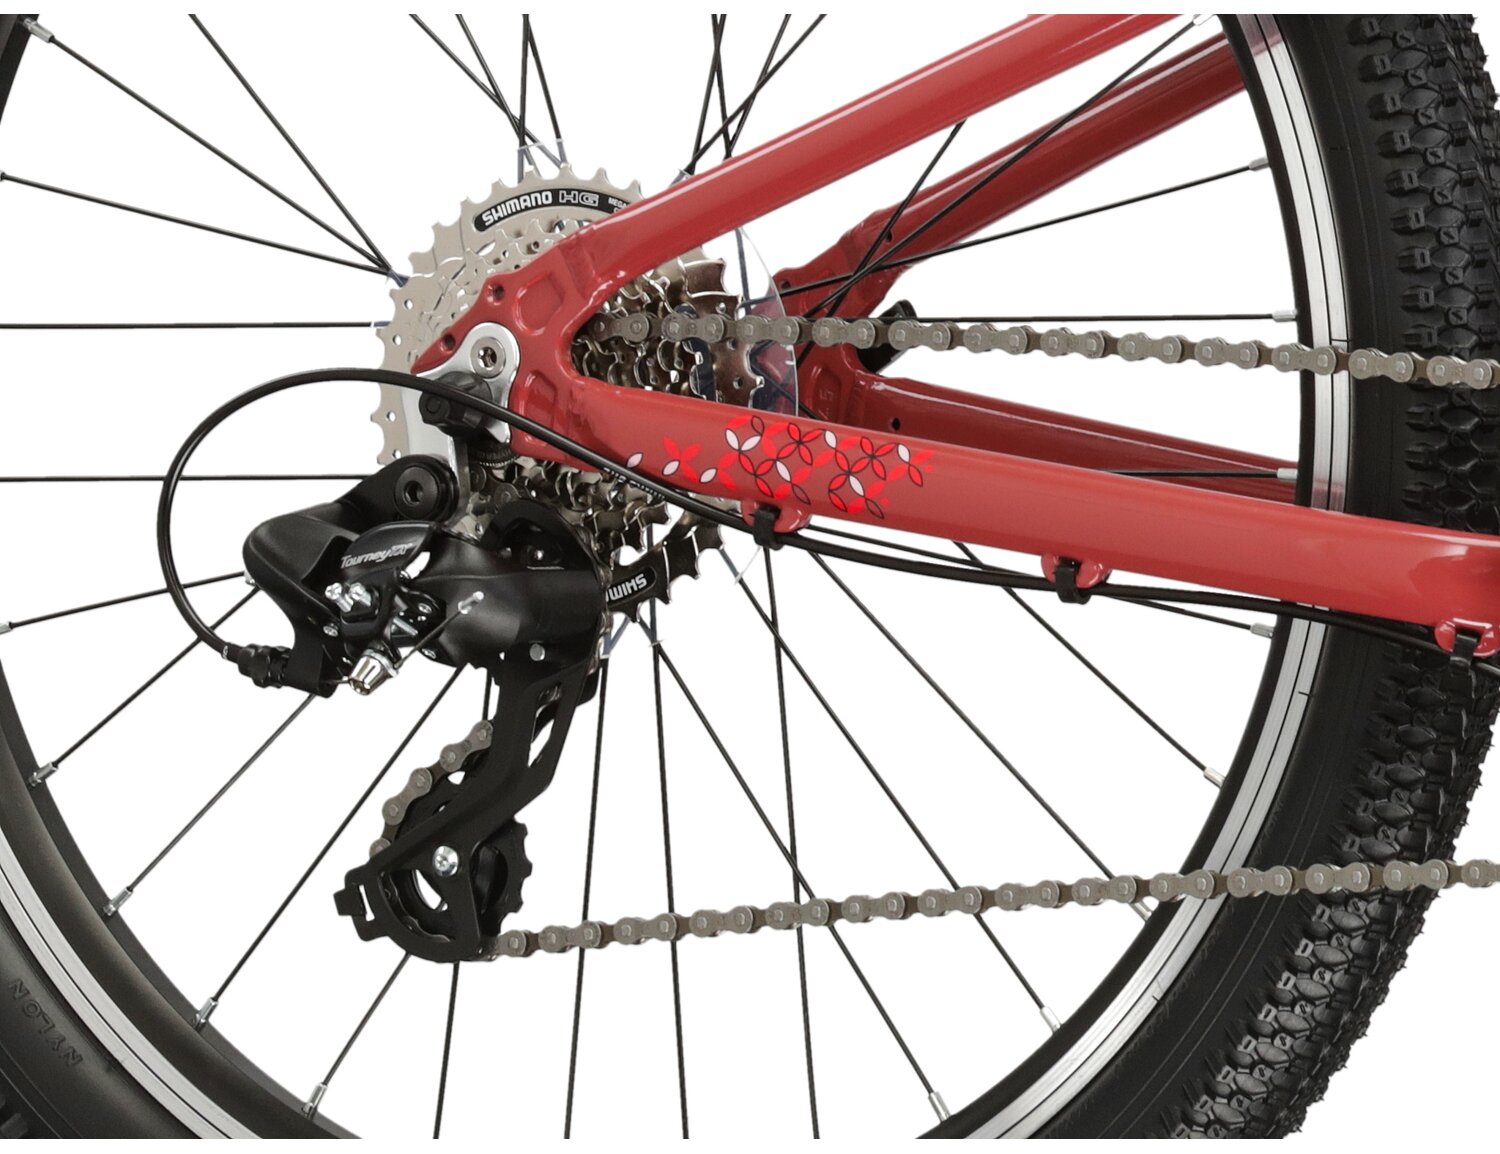  Tylna ośmiobiegowa przerzutka Shimano Tourney TX800 oraz hamulce v-brake w rowerze juniorskim KROSS Lea JR 1.0 